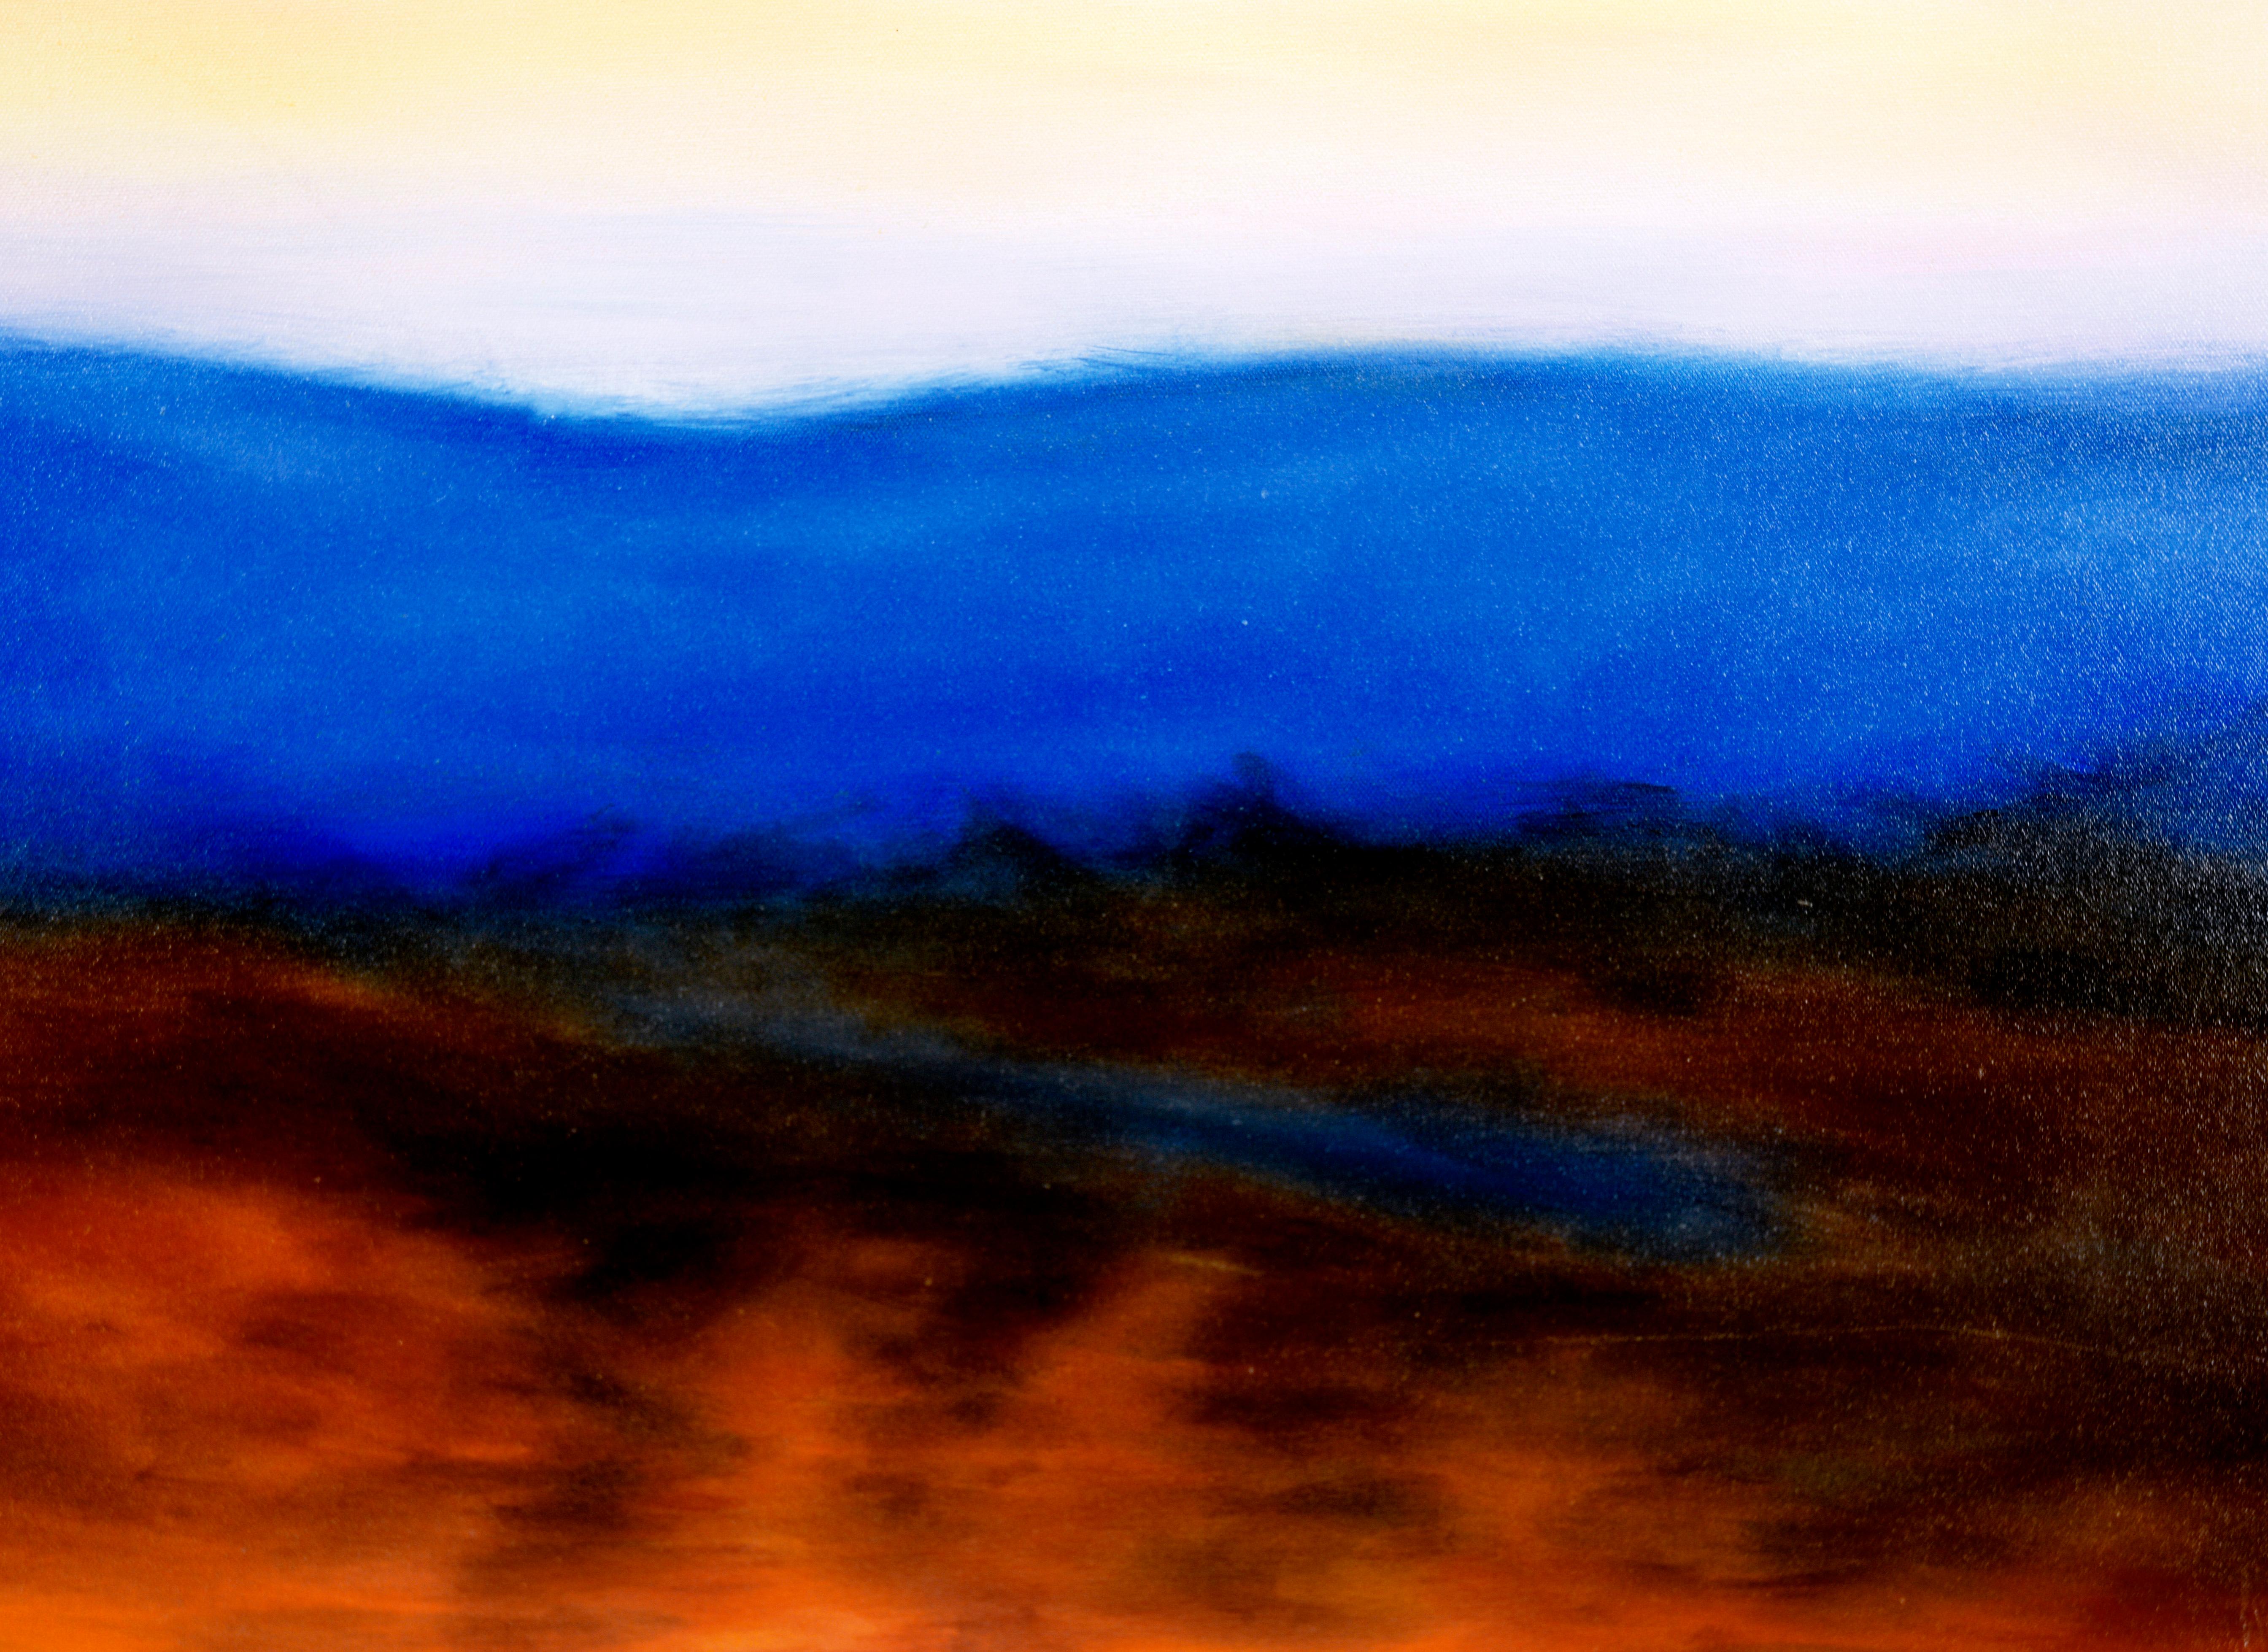 Lever de soleil brumeux avec montagnes bleues - Paysage à l'huile sur toile

Paysage vibrant avec des montagnes bleues de Kelly Cool Lucas (américaine, née en 1974). Une ligne de montagnes d'un bleu intense traverse la composition, divisant le